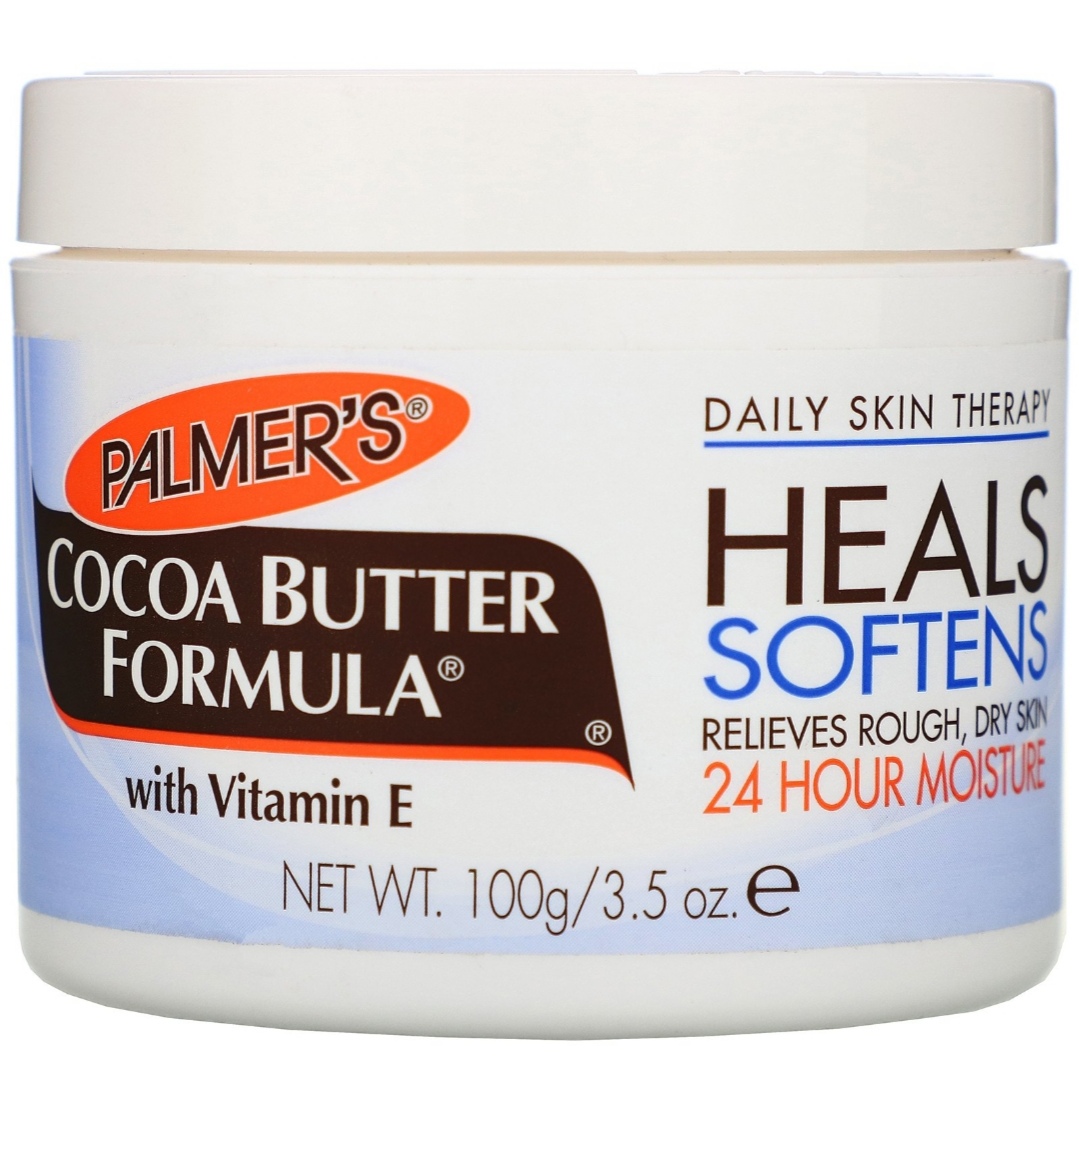 Palmer's, Cocoa Butter Formula with Vitamin E, 3.5 oz (100 g)